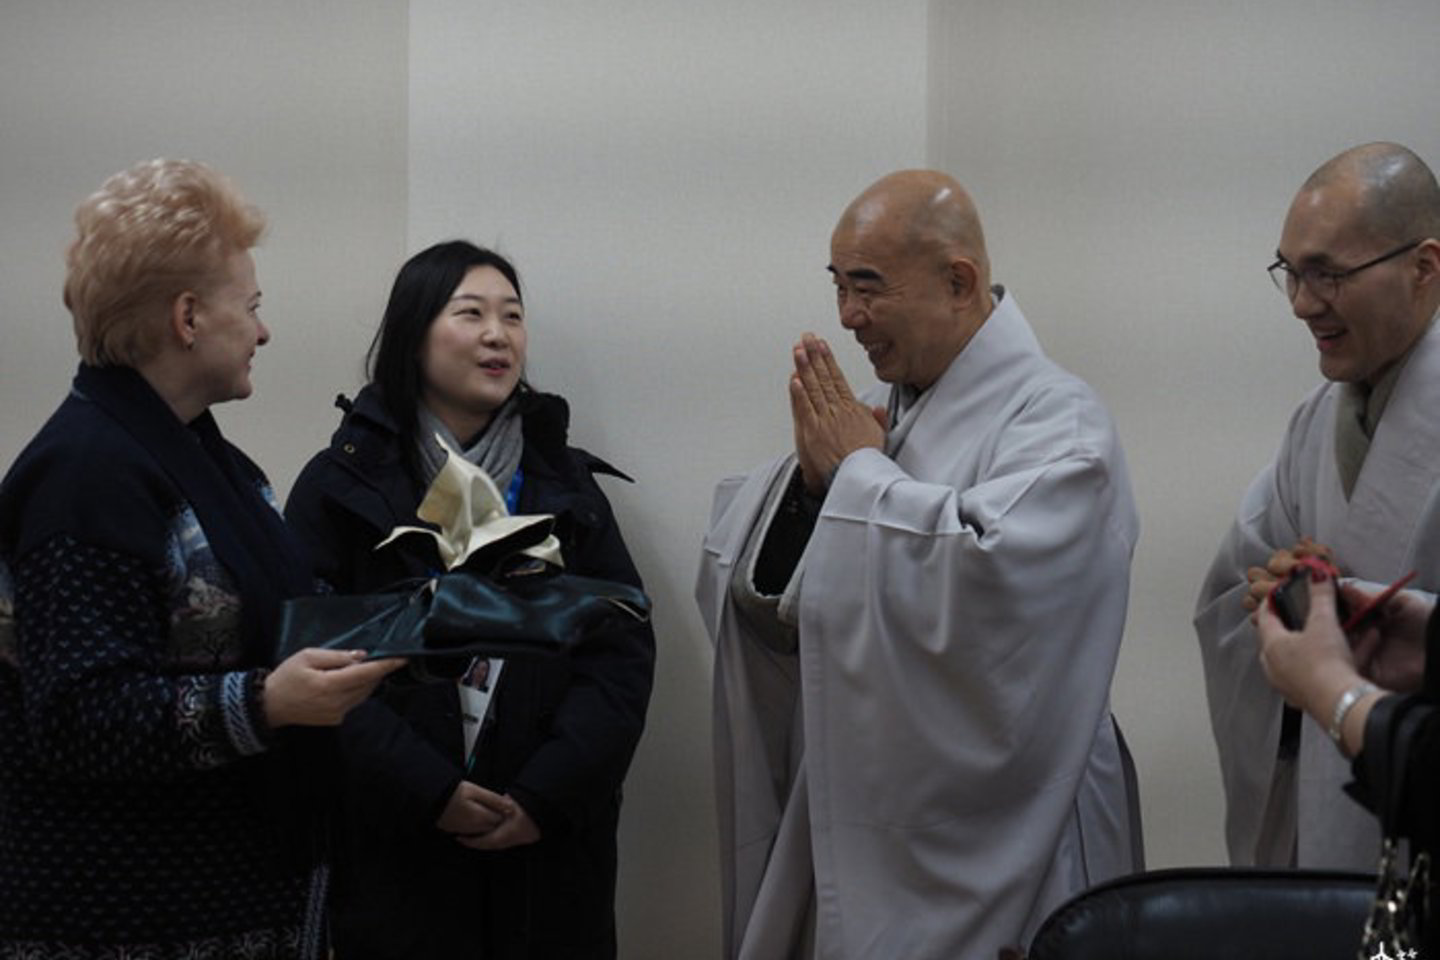  Apie D.Grybauskaitės simpatijas budizmui pranešė net Korėjos budistų televizija.<br> woljeongsa.org nuotr.